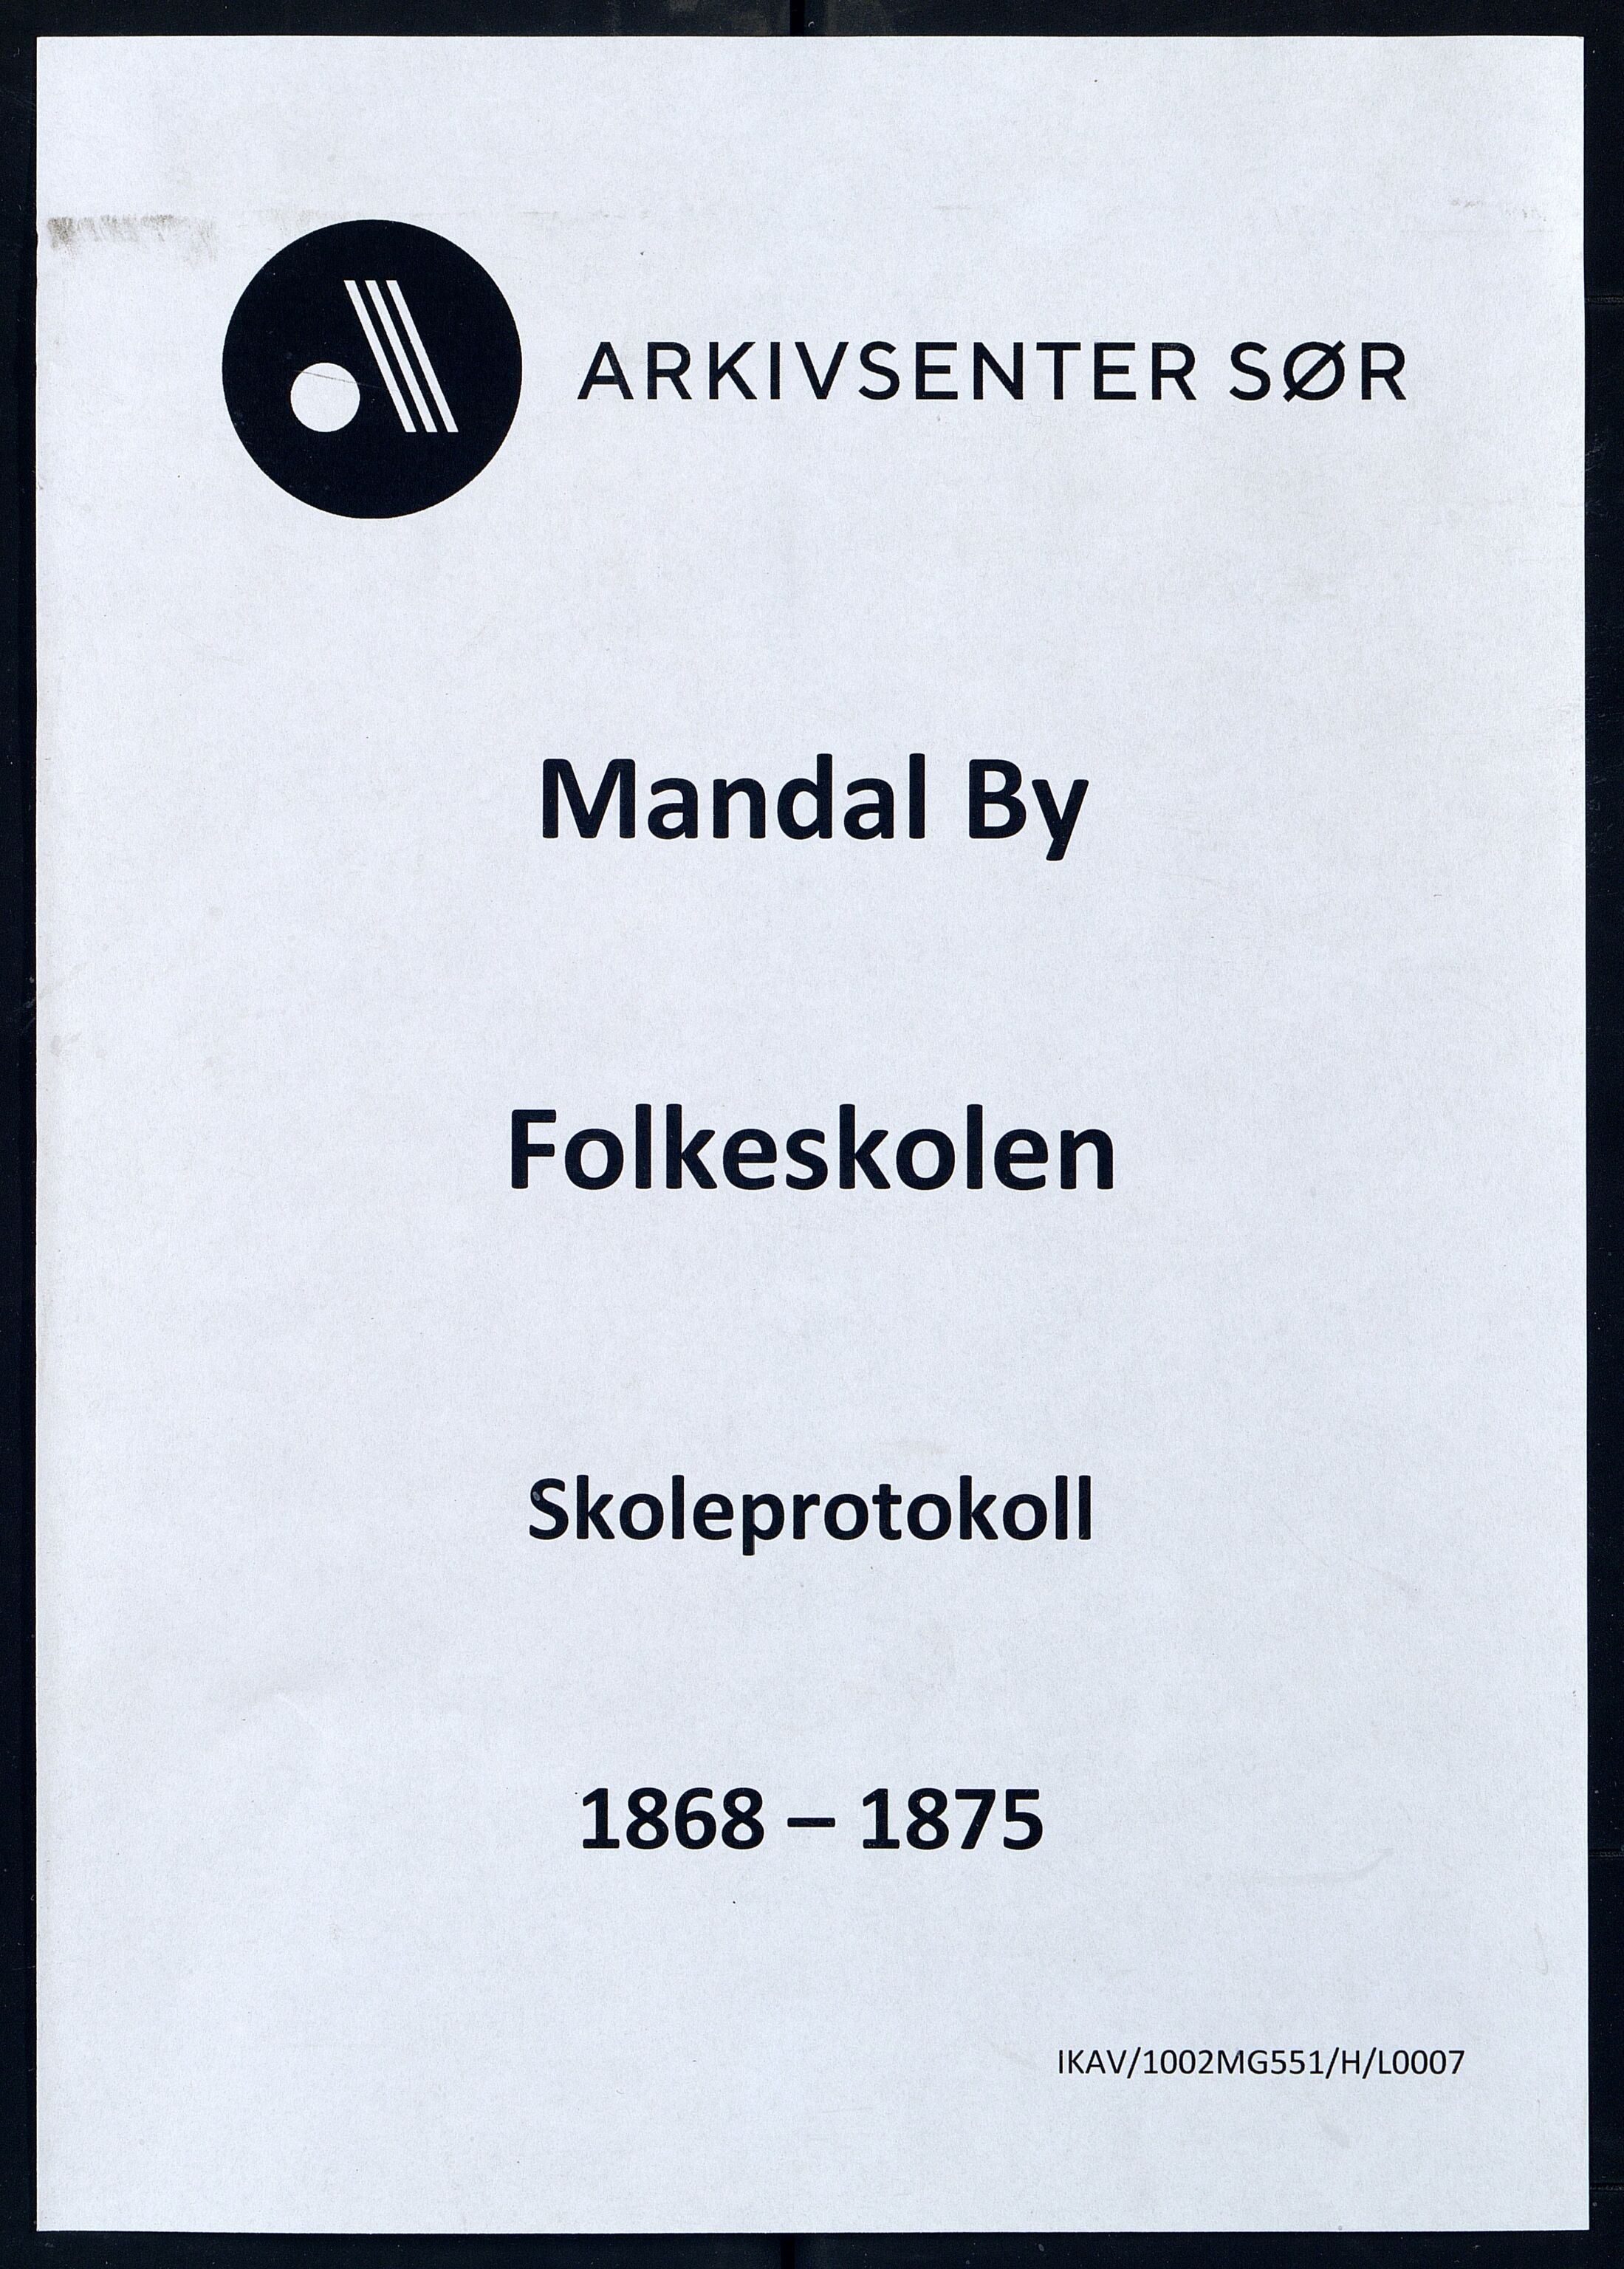 Mandal By - Mandal Allmueskole/Folkeskole/Skole, IKAV/1002MG551/H/L0007: Skoleprotokoll, 1868-1875